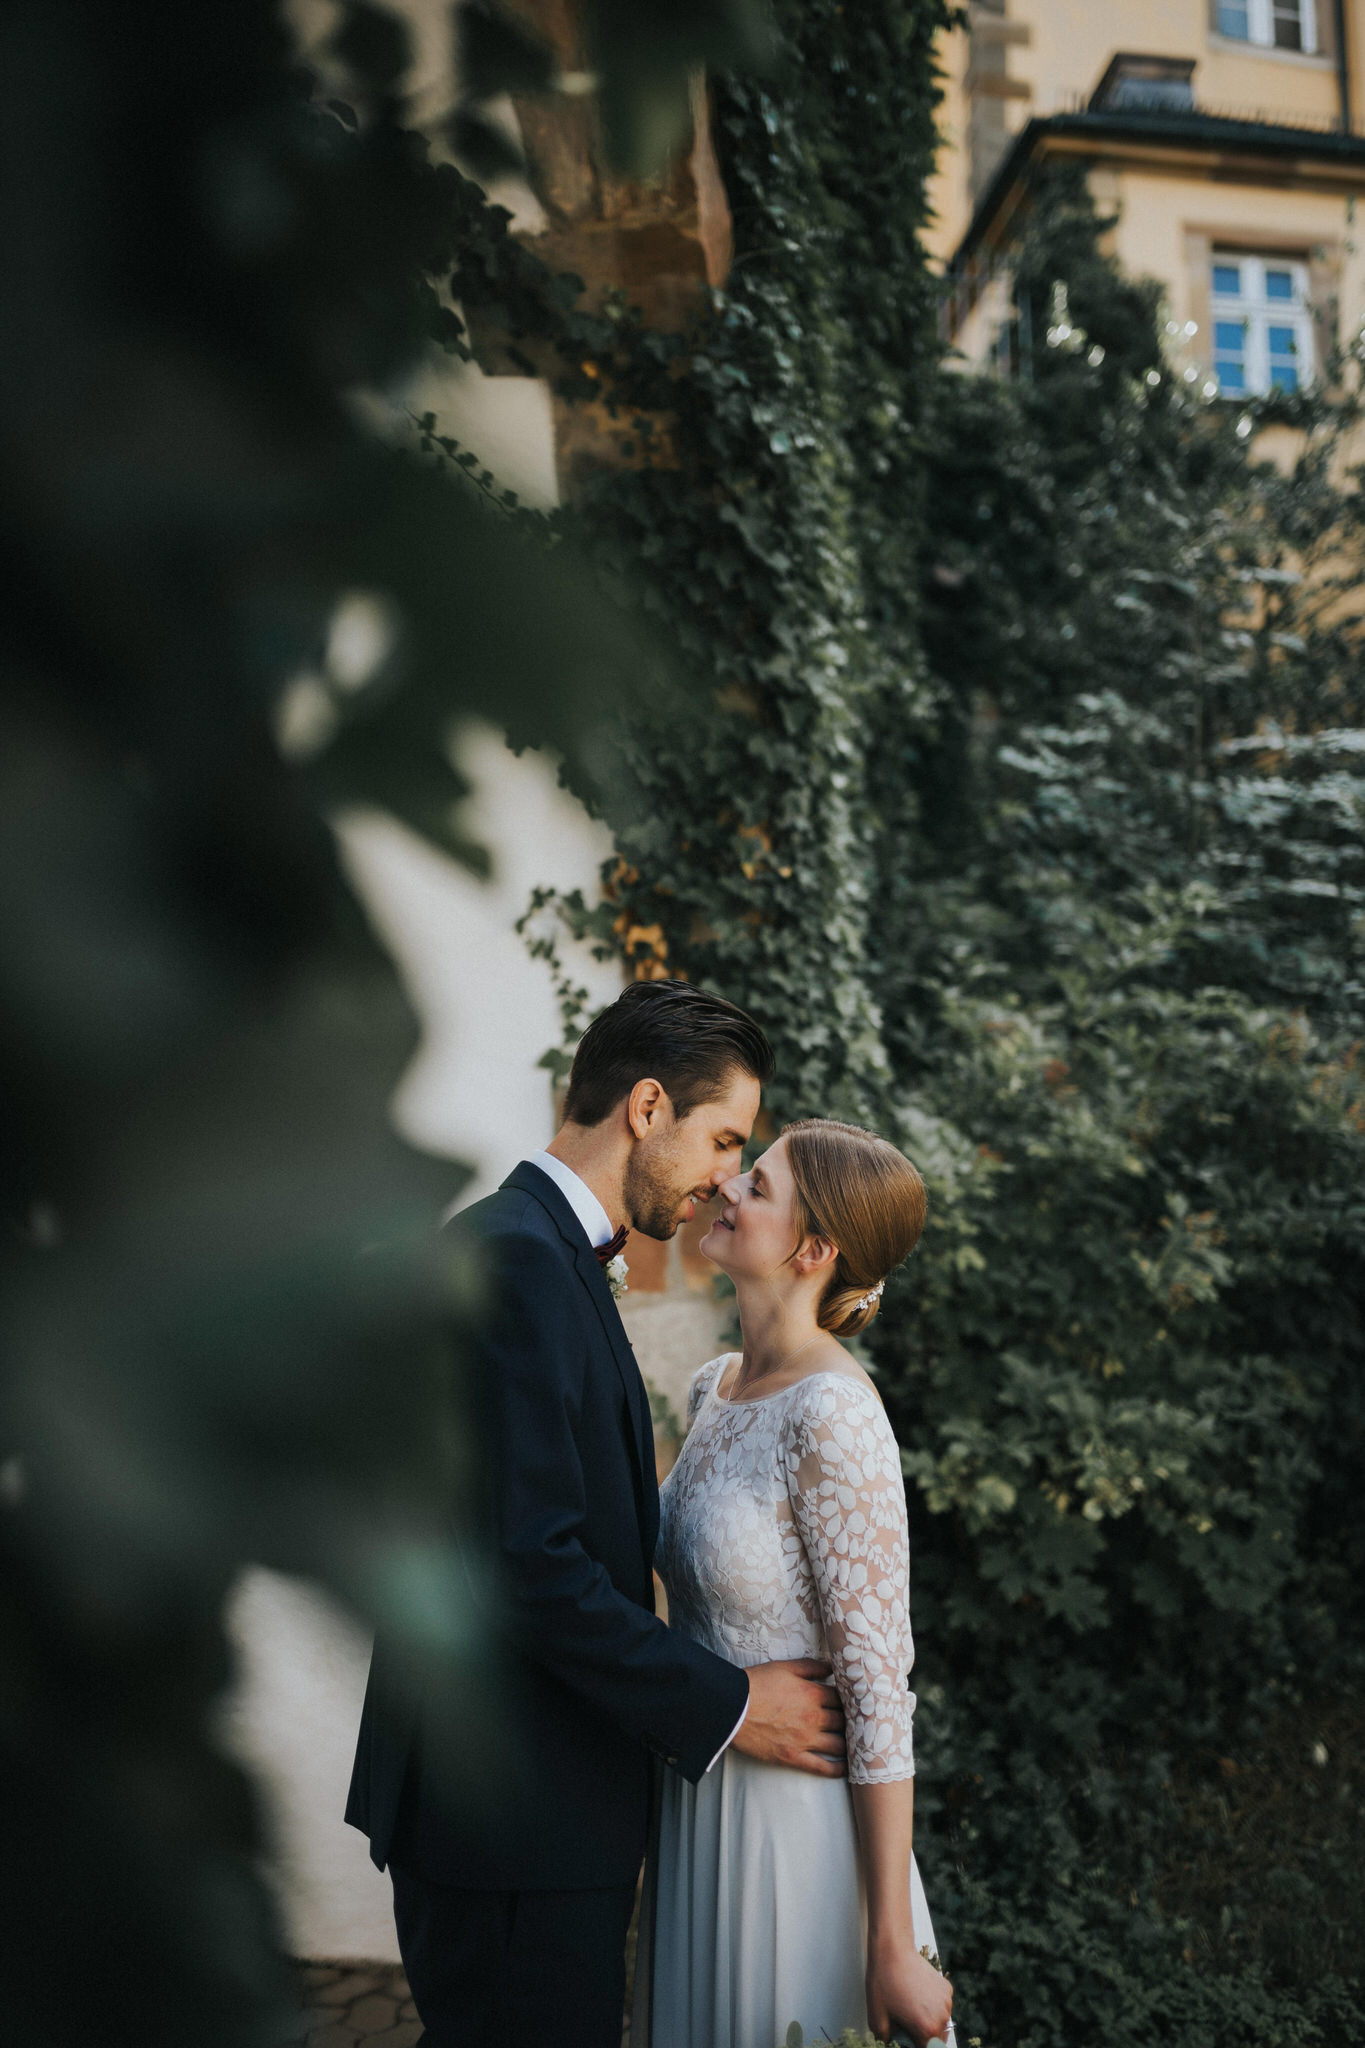 Verträumte Brautpaarfotos am Schloss Friedrichstein – Das frisch vermählte Paar genießt intime Momente der Zweisamkeit inmitten der historischen Atmosphäre, ein wundervolles Spiel aus Liebe und Geschichte